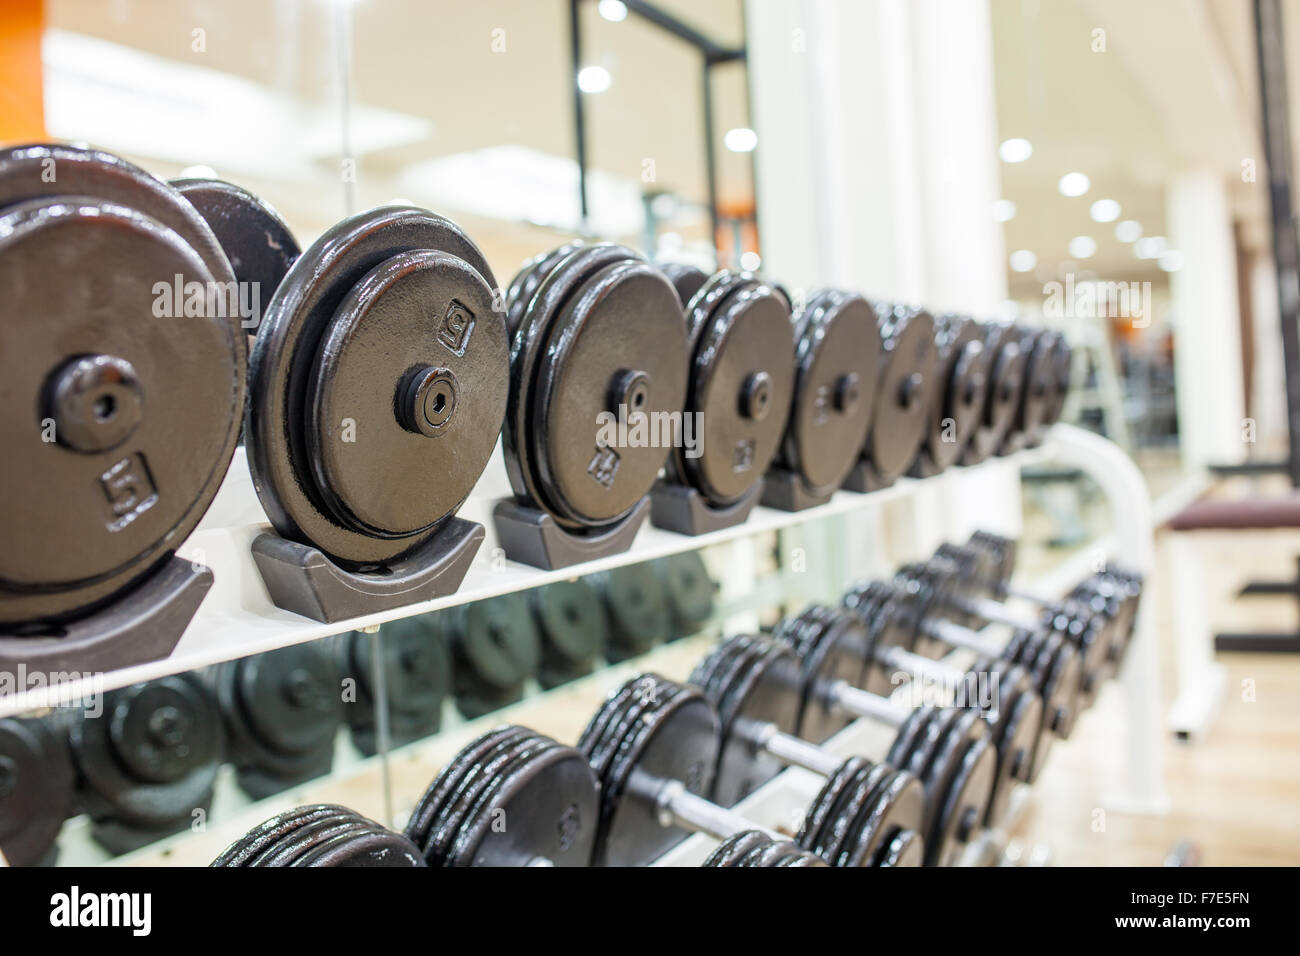 Black dumbbell in fitness center room for background . Stock Photo